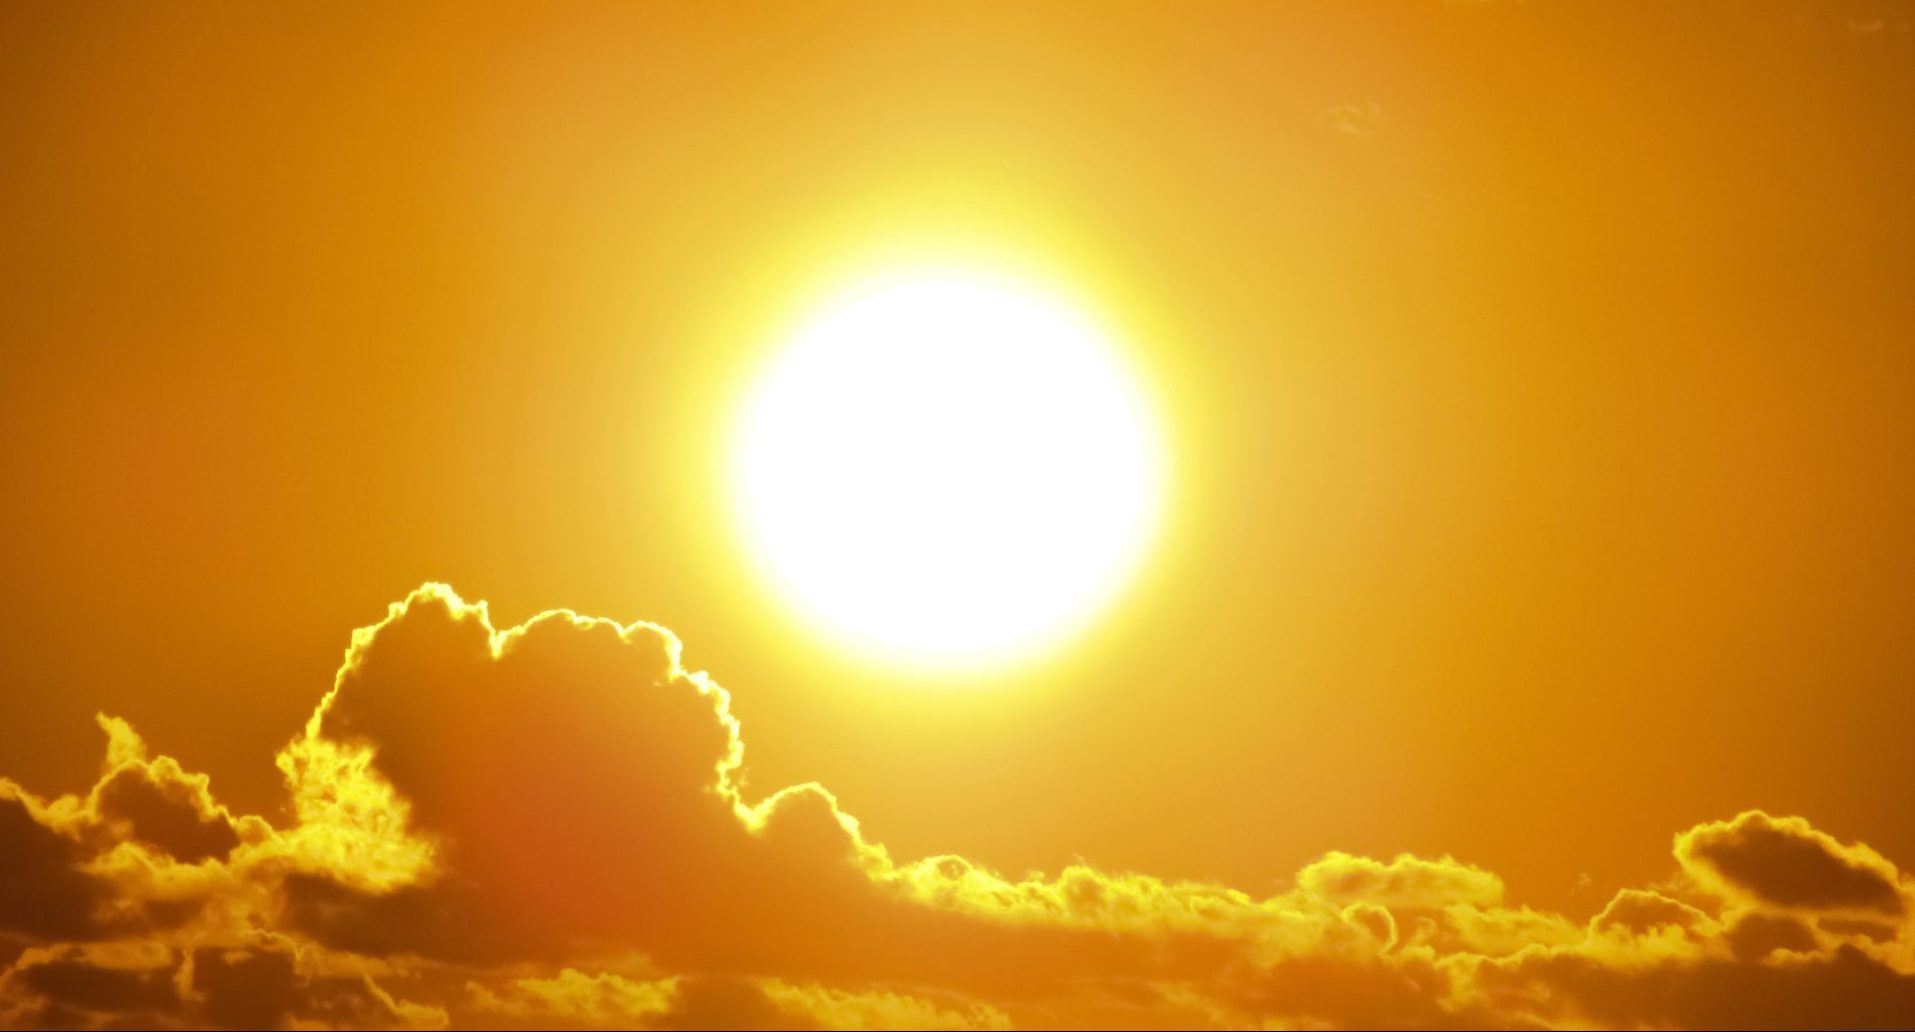 Termômetros já marcavam 31°C às 9h nesta quarta-feira – Foto: Reprodução/Canva